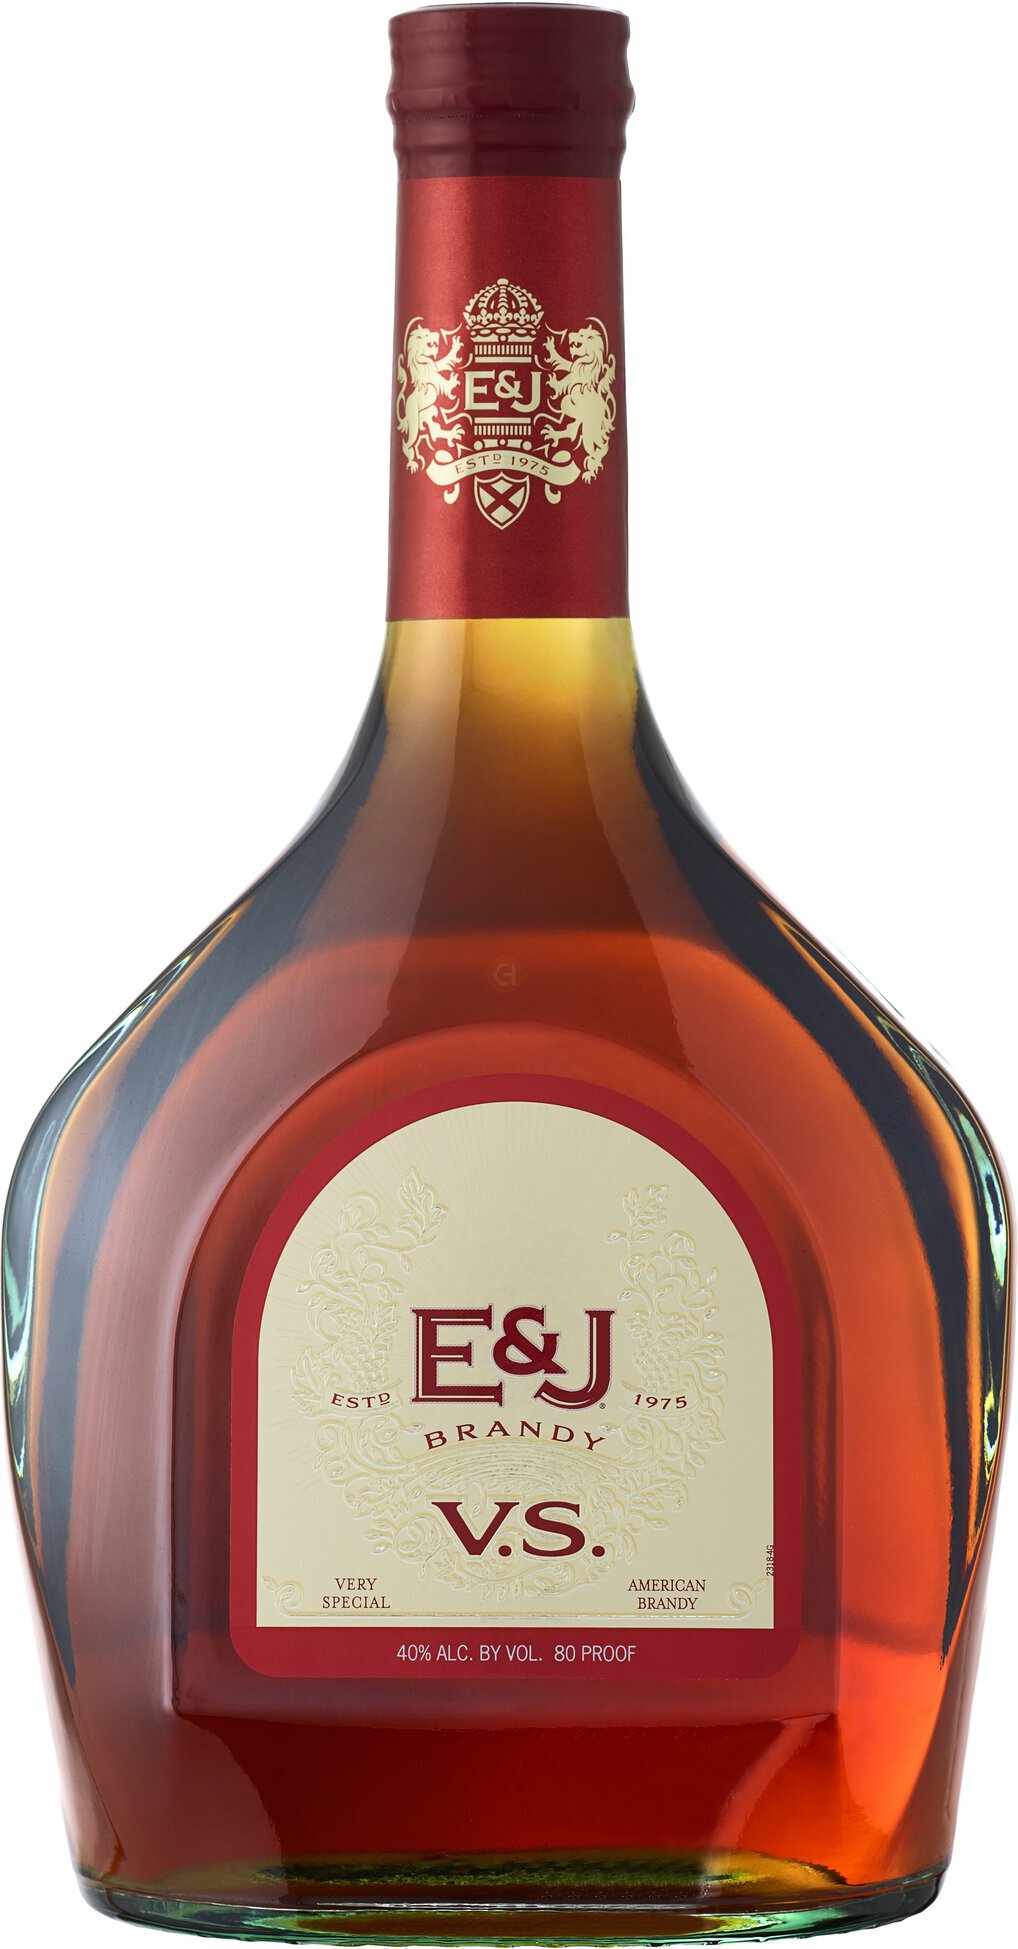 E&J V.S. Original Brandy 375ml